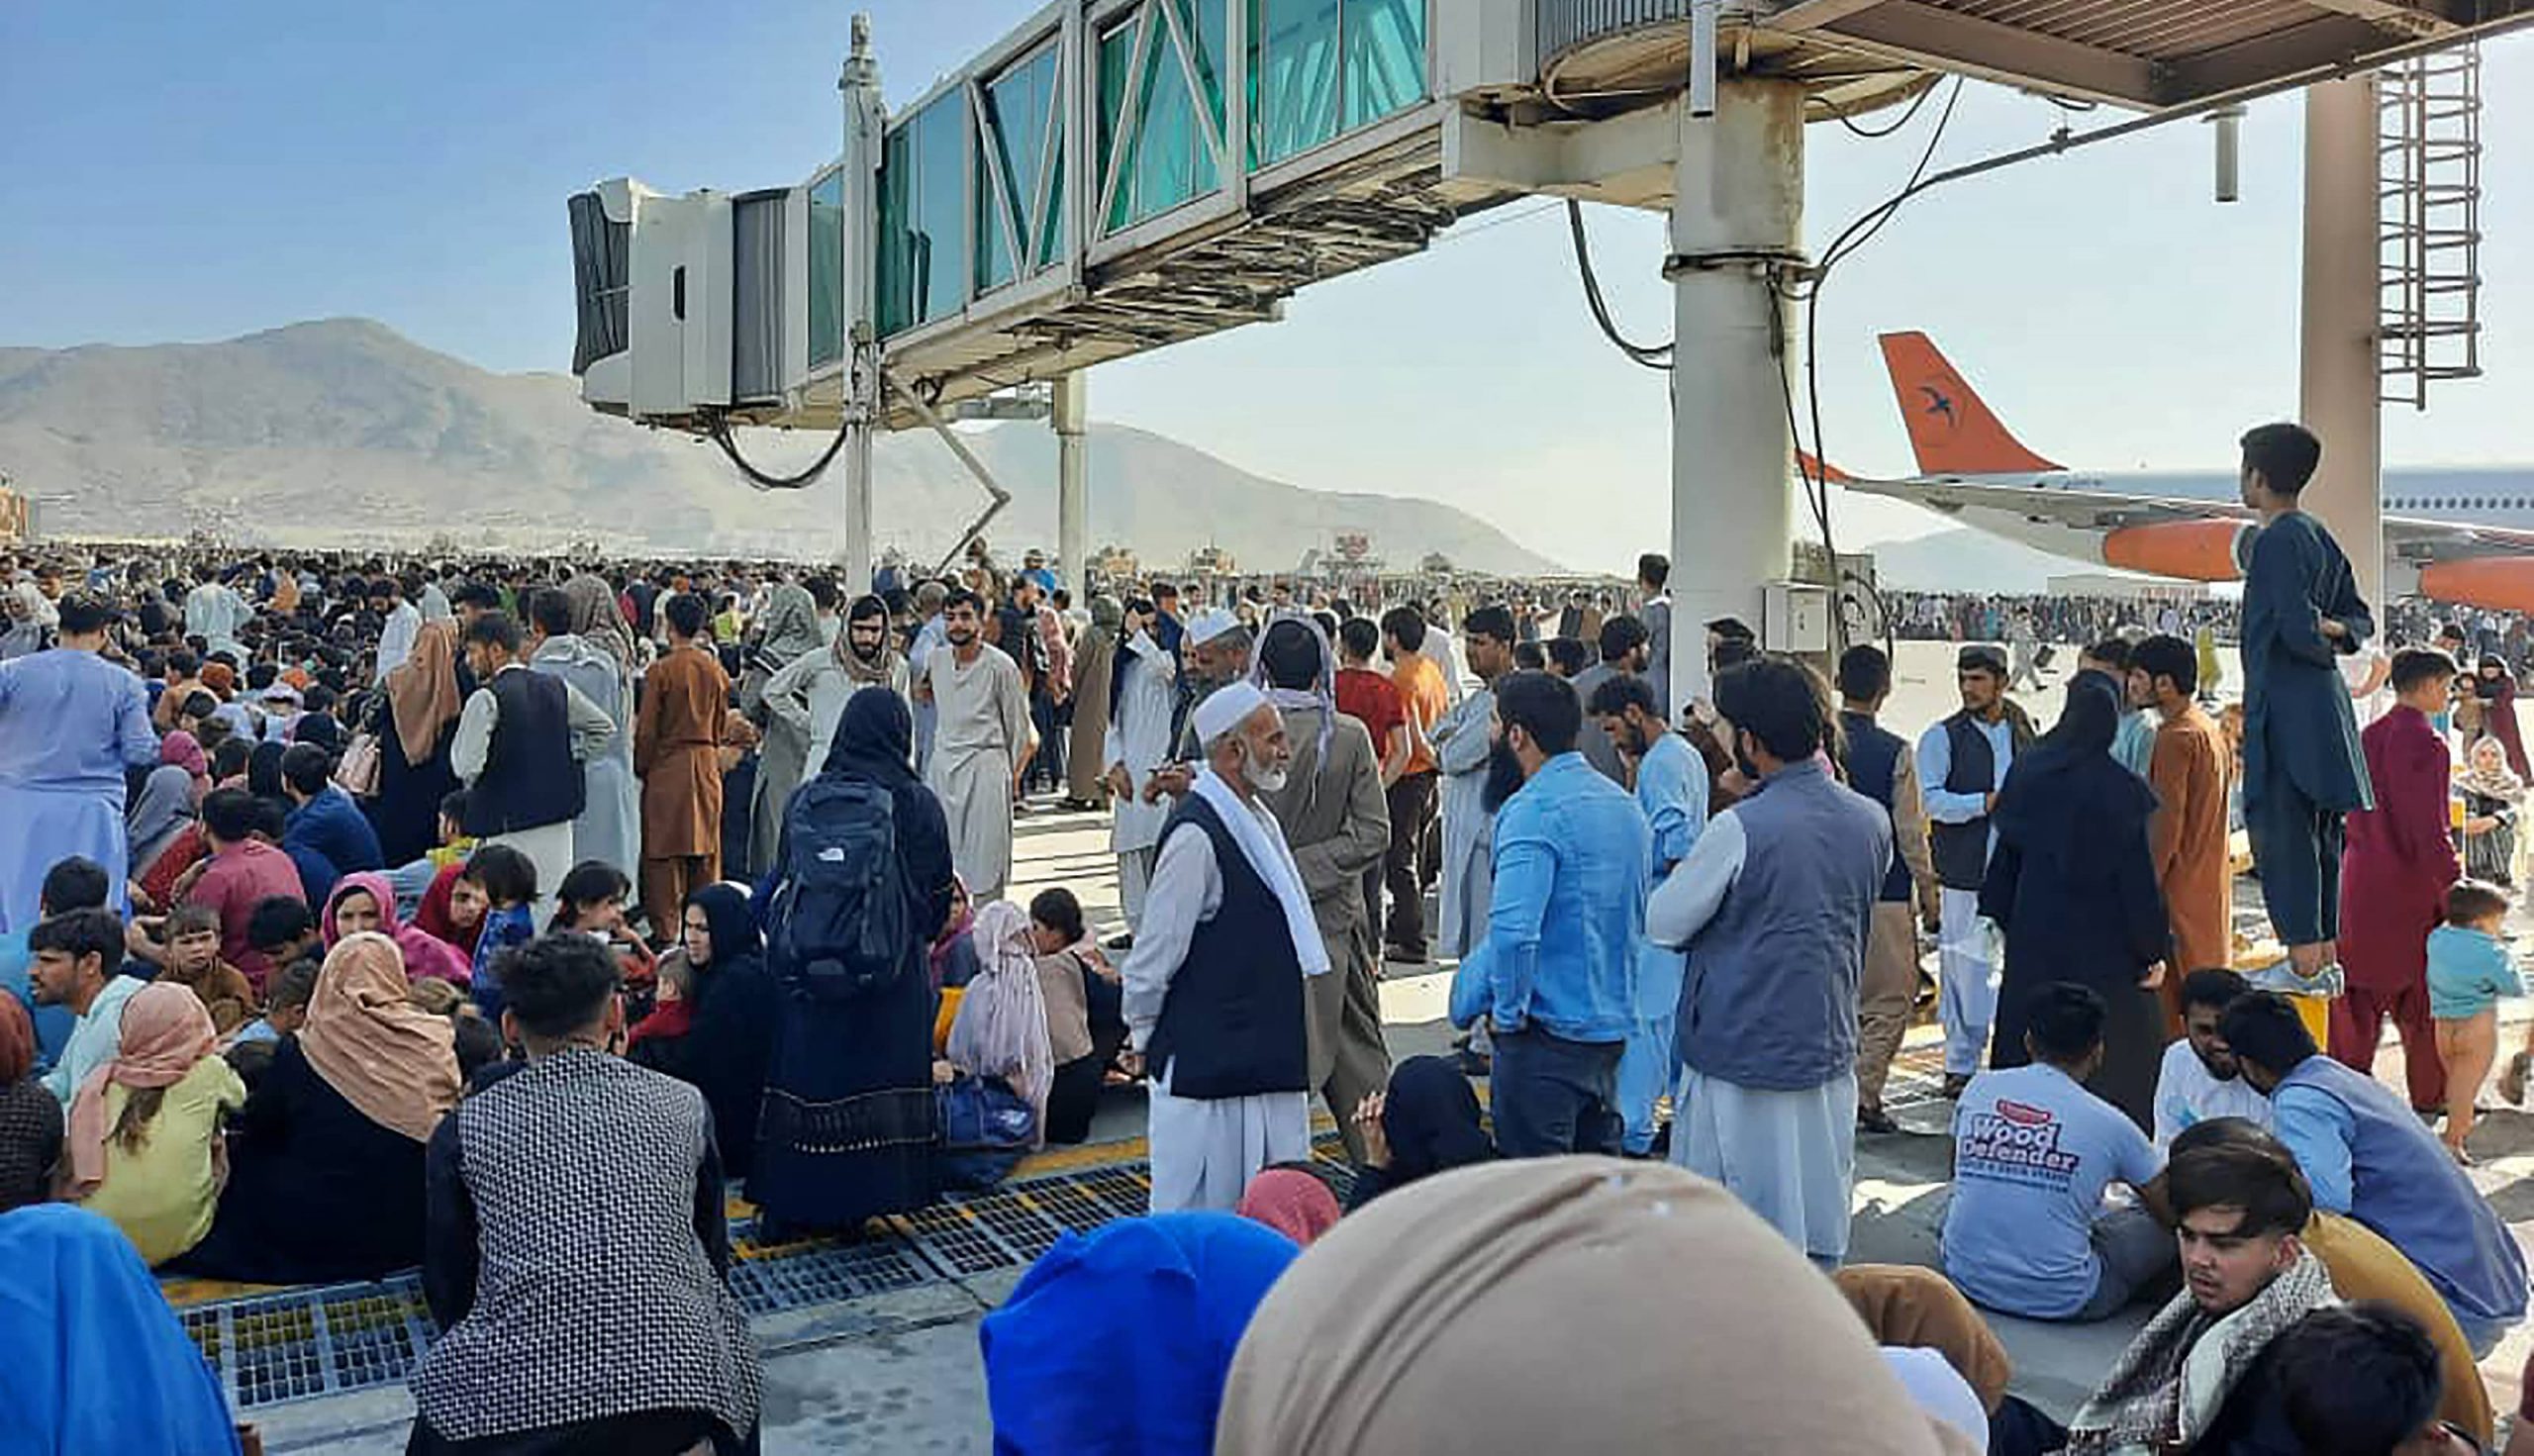 Escenas caóticas en el aeropuerto de Kabul mientras afganos y extranjeros huyen de los talibanes